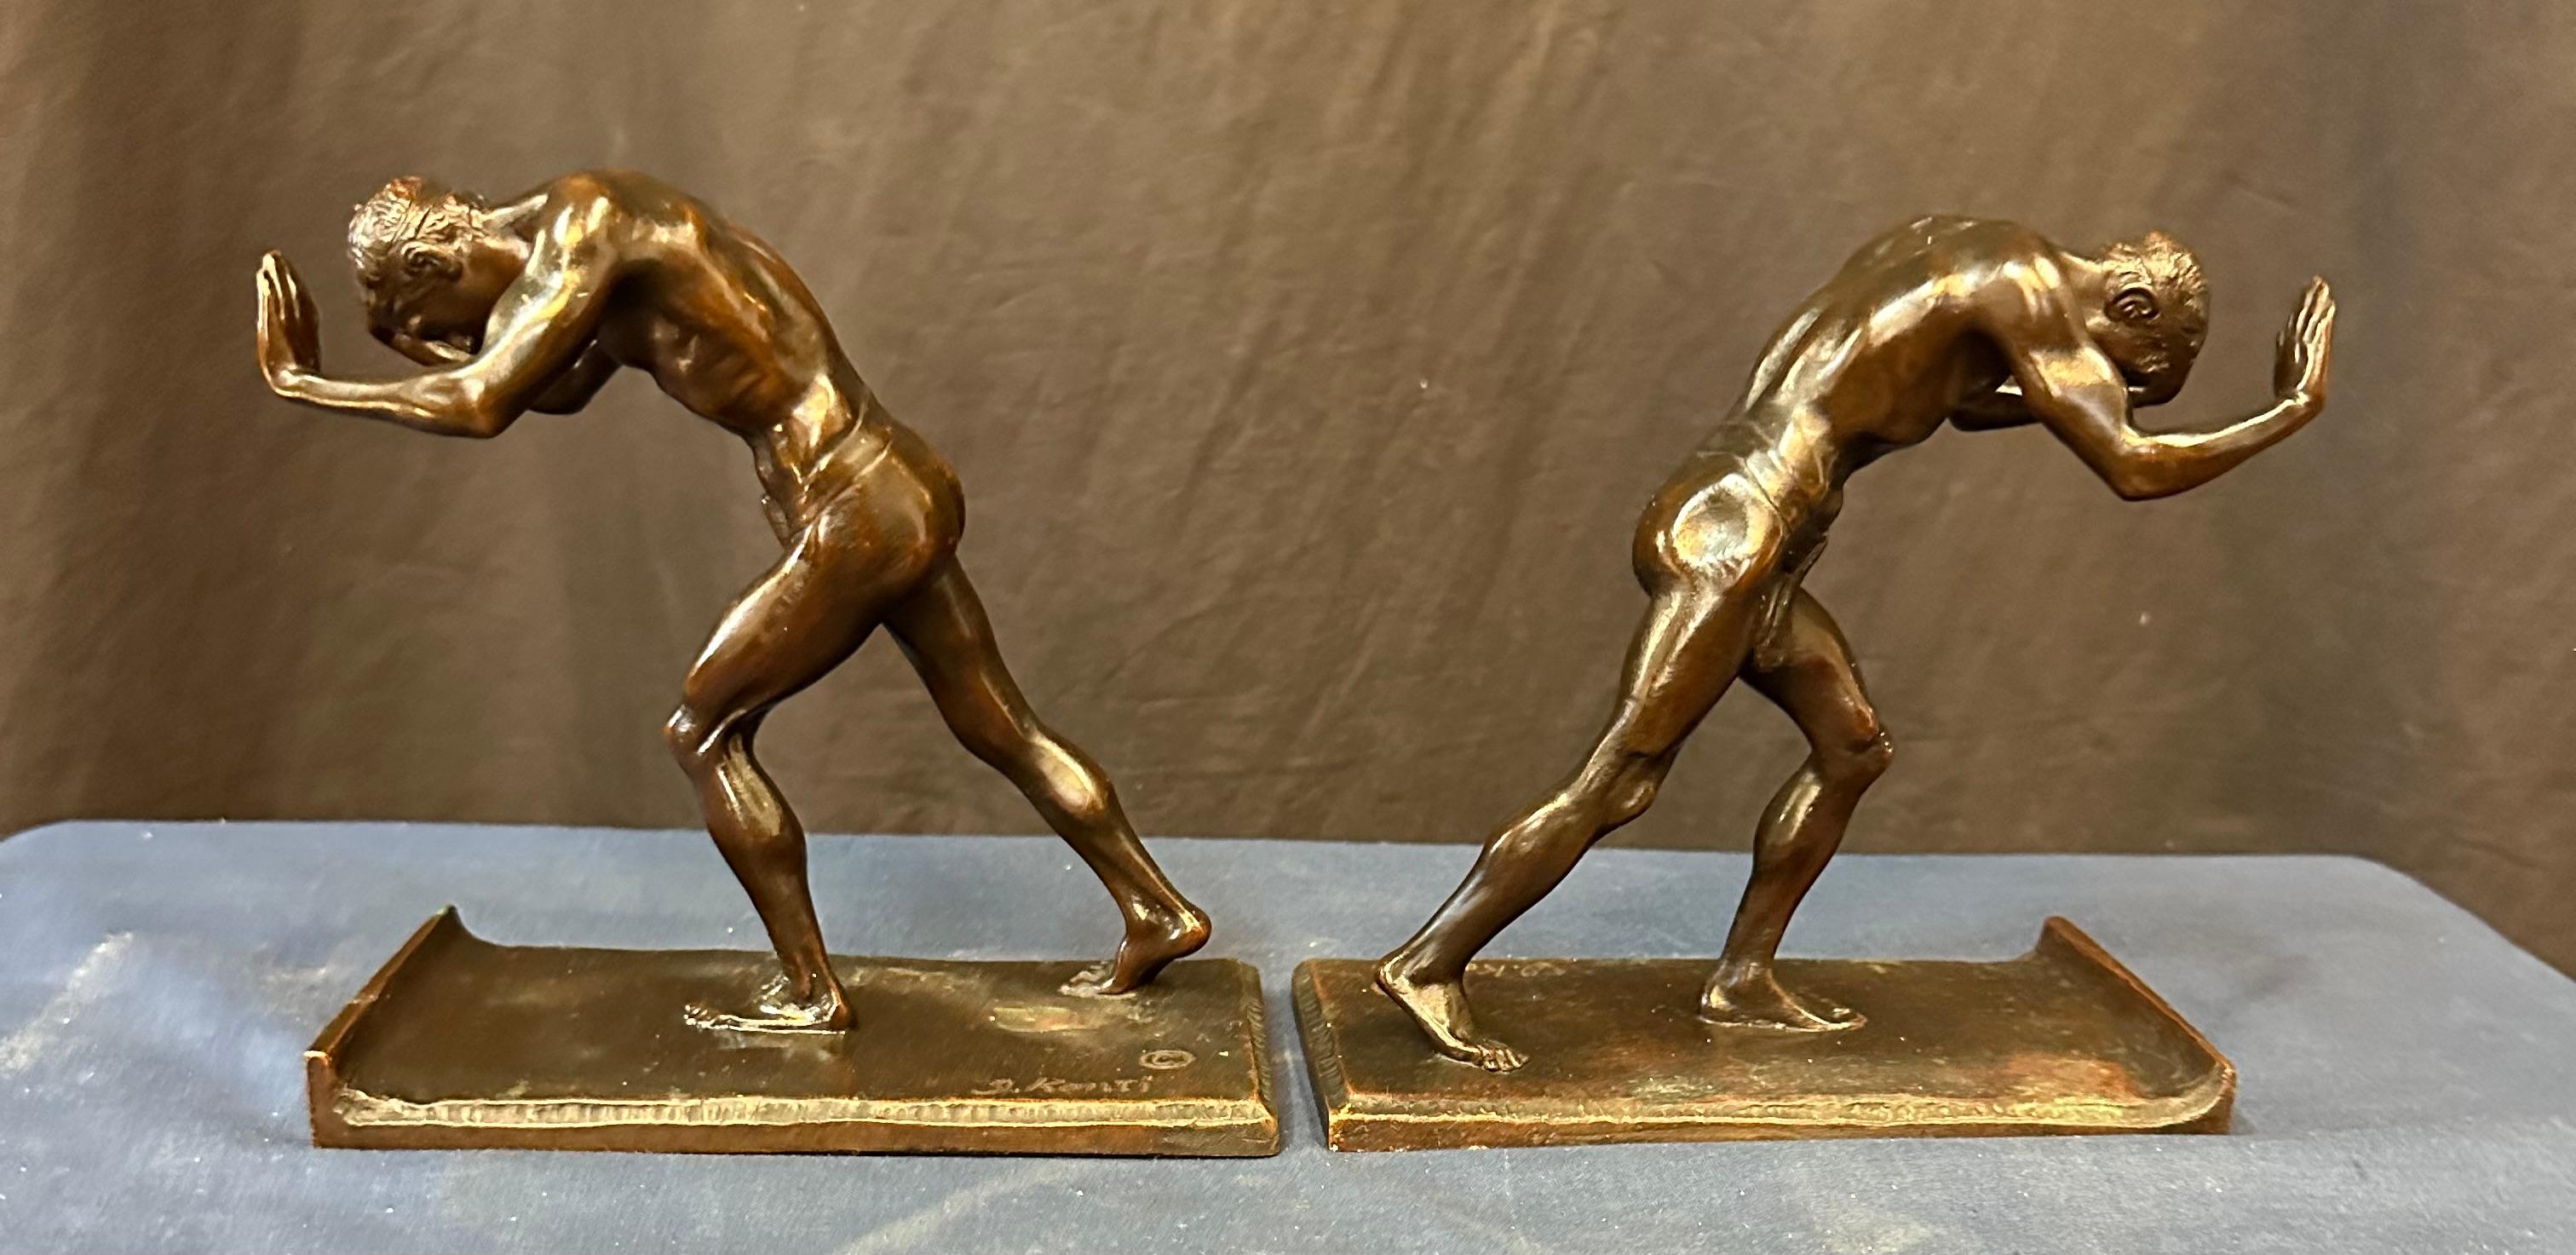 Cette paire vintage de serre-livres Art of Vintage en bronze patiné date du début du 20e siècle. Le sculpteur Isidor Konti a magistralement créé cette paire de jeunes hommes musclés partiellement nus, uniquement vêtus d'une étoffe de pagne. Chacune